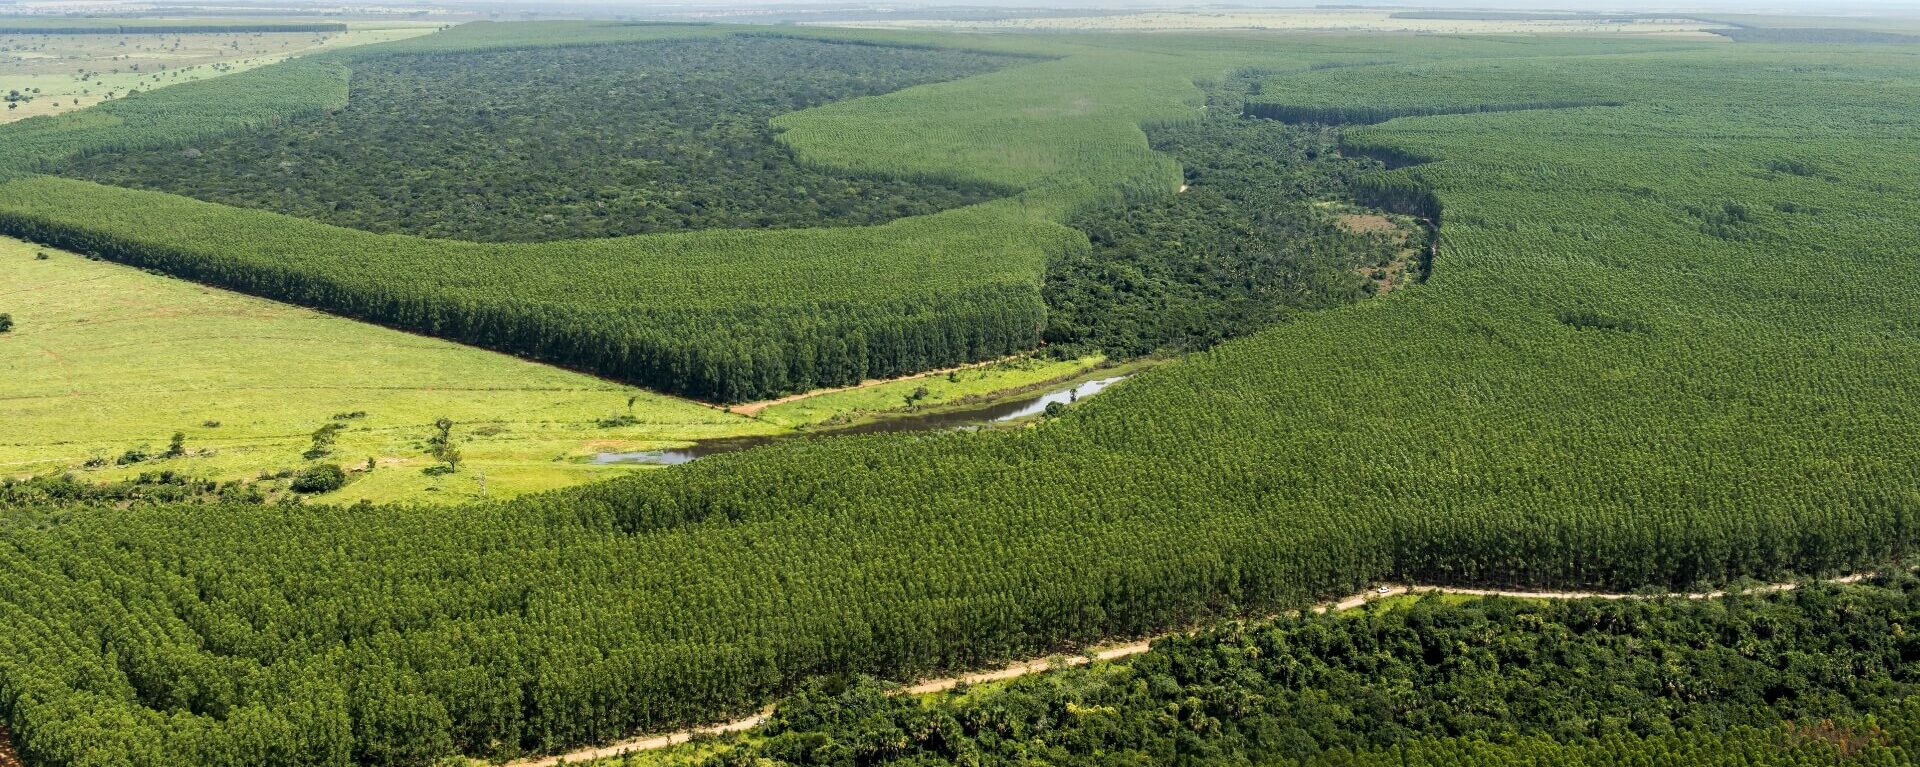 巴西埃尔多拉多（Eldorado Brasil）的所有桉树都来自于重新造林区，在认证区域内维护，支持各种捍卫生物多样性和支持当地发展的举措。我们的鲜花从空气中去除的碳比公司在其生产过程中排放的更多，从而中和了温室气体。我们还通过重复使用无法使用的桉树废料来生产清洁能源。